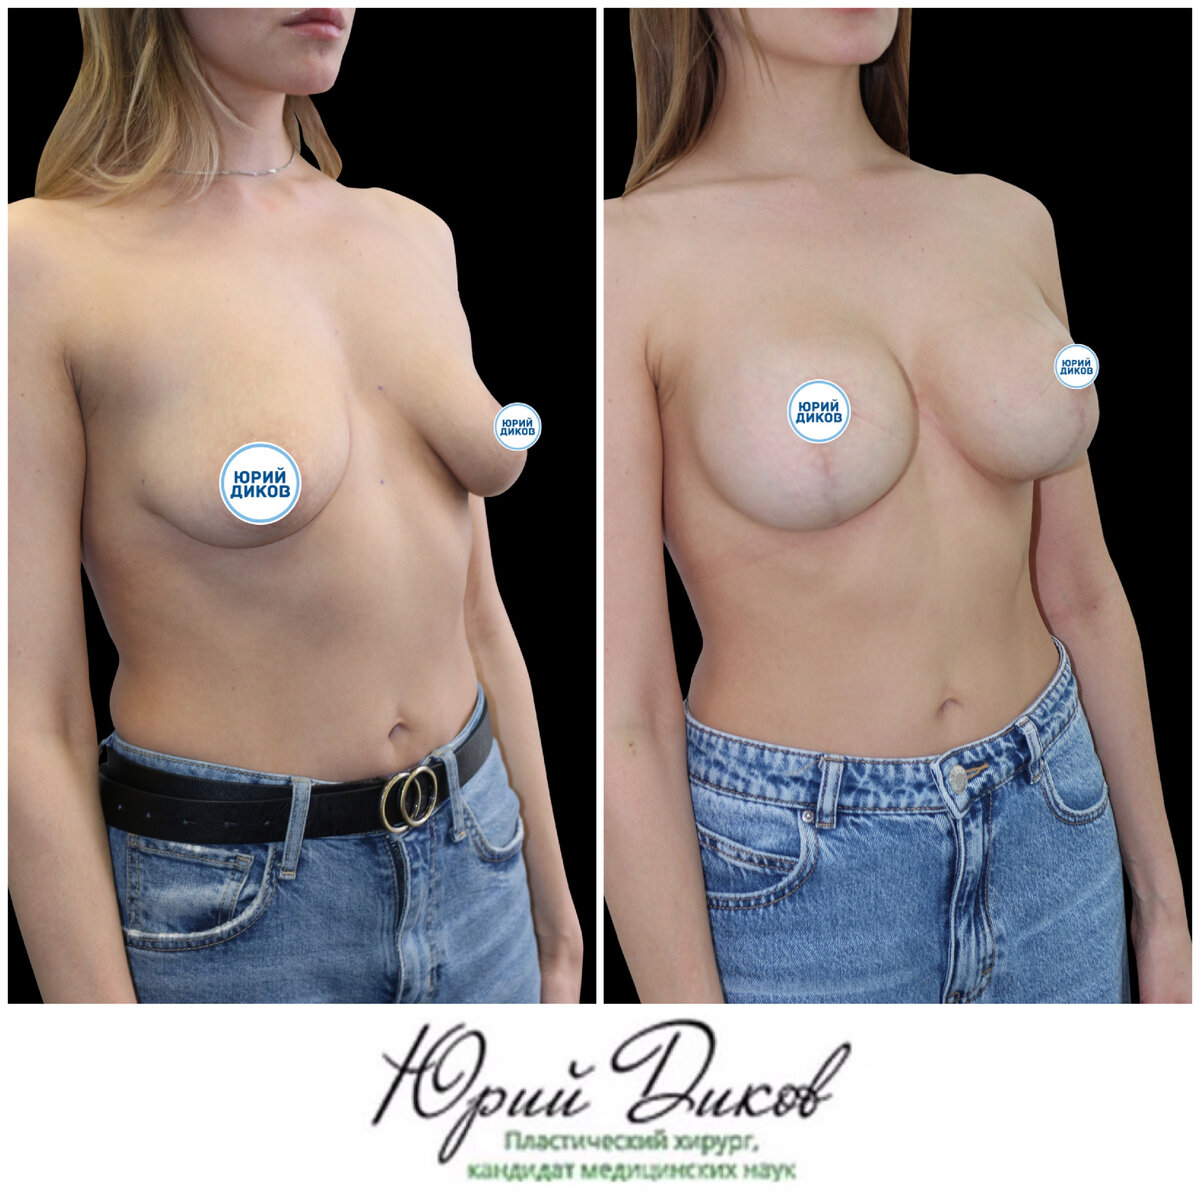 разные импланты на одну грудь фото 14